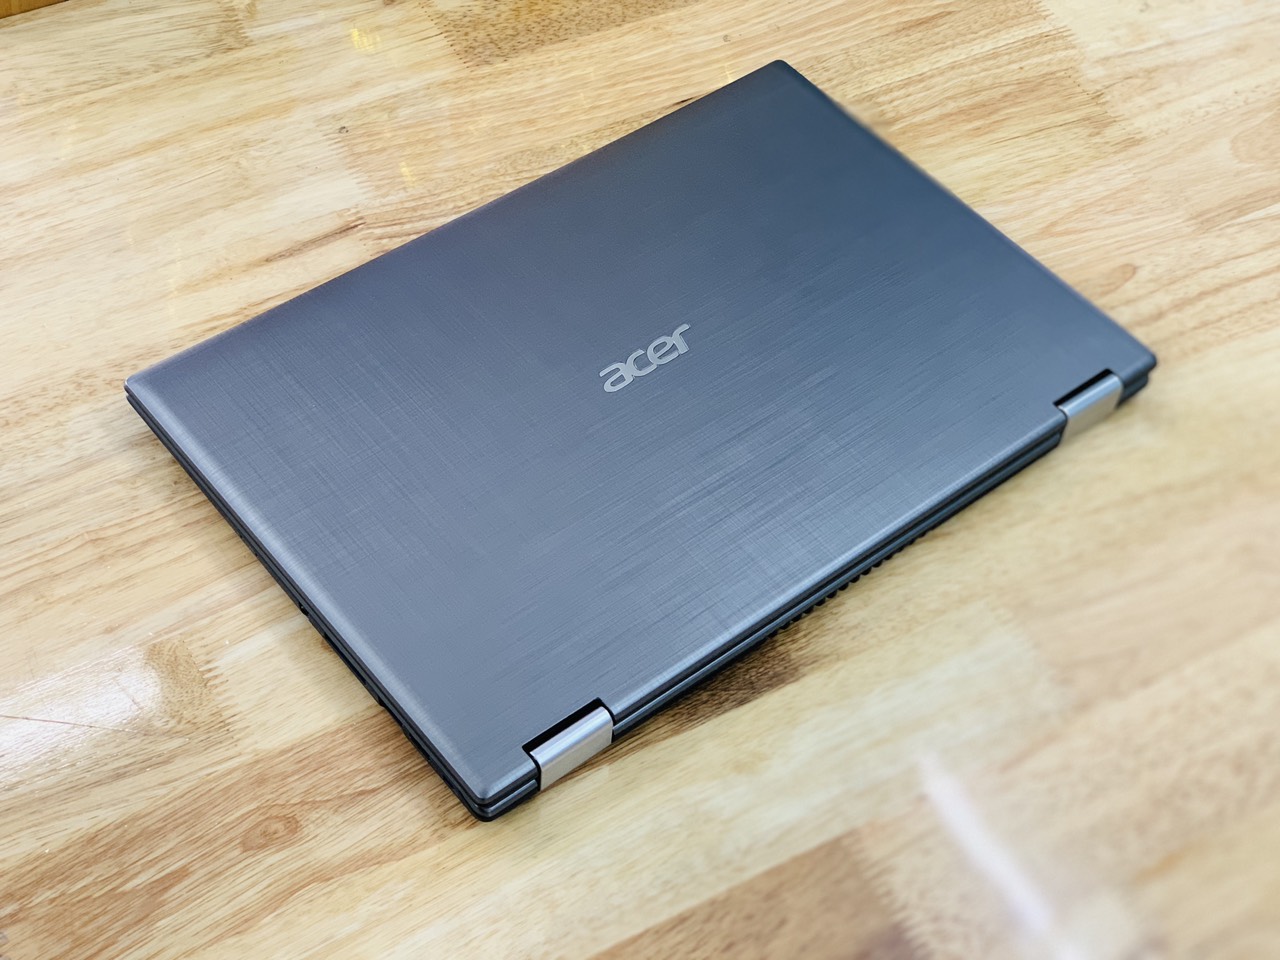 Laptop Acer Spin SP314-51 i5-8250U Ram 4GB SSD 256GB 14 inch Cảm Ứng Xoay 306 Độ Thế Hệ 8(2018) Như Mới